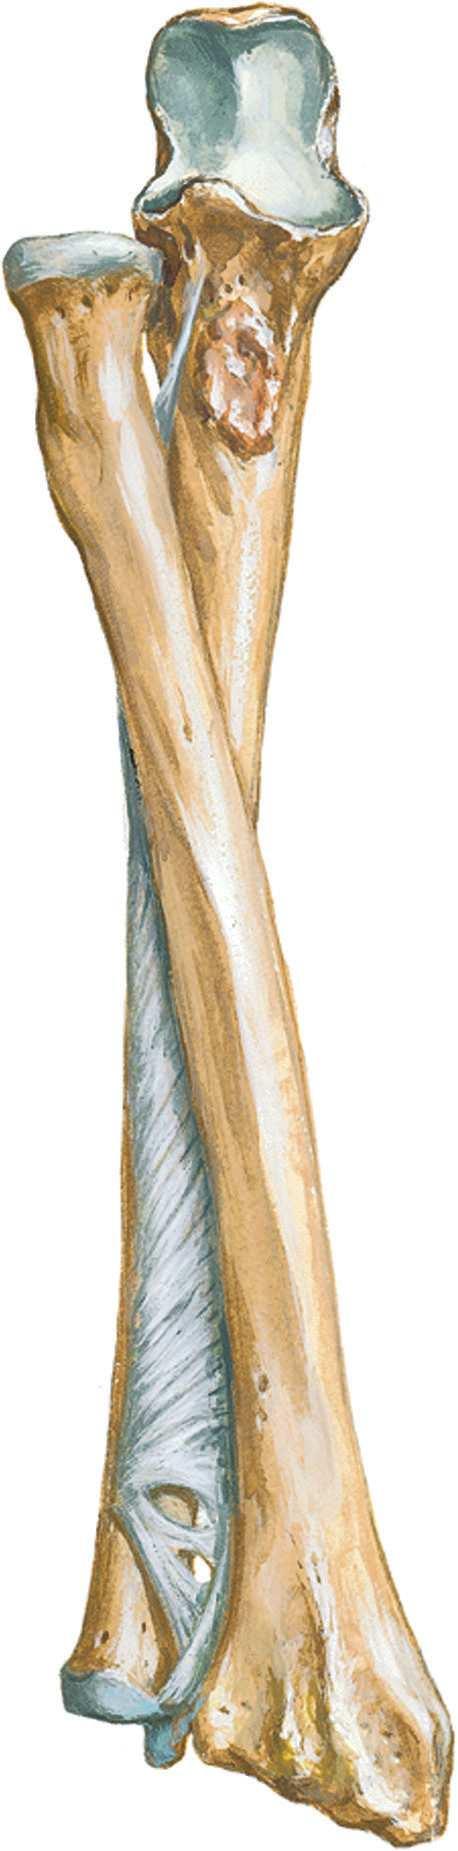 Anatomie Ligaments Avant-bras Figure 10-4. Ligaments de l'avant-bras.